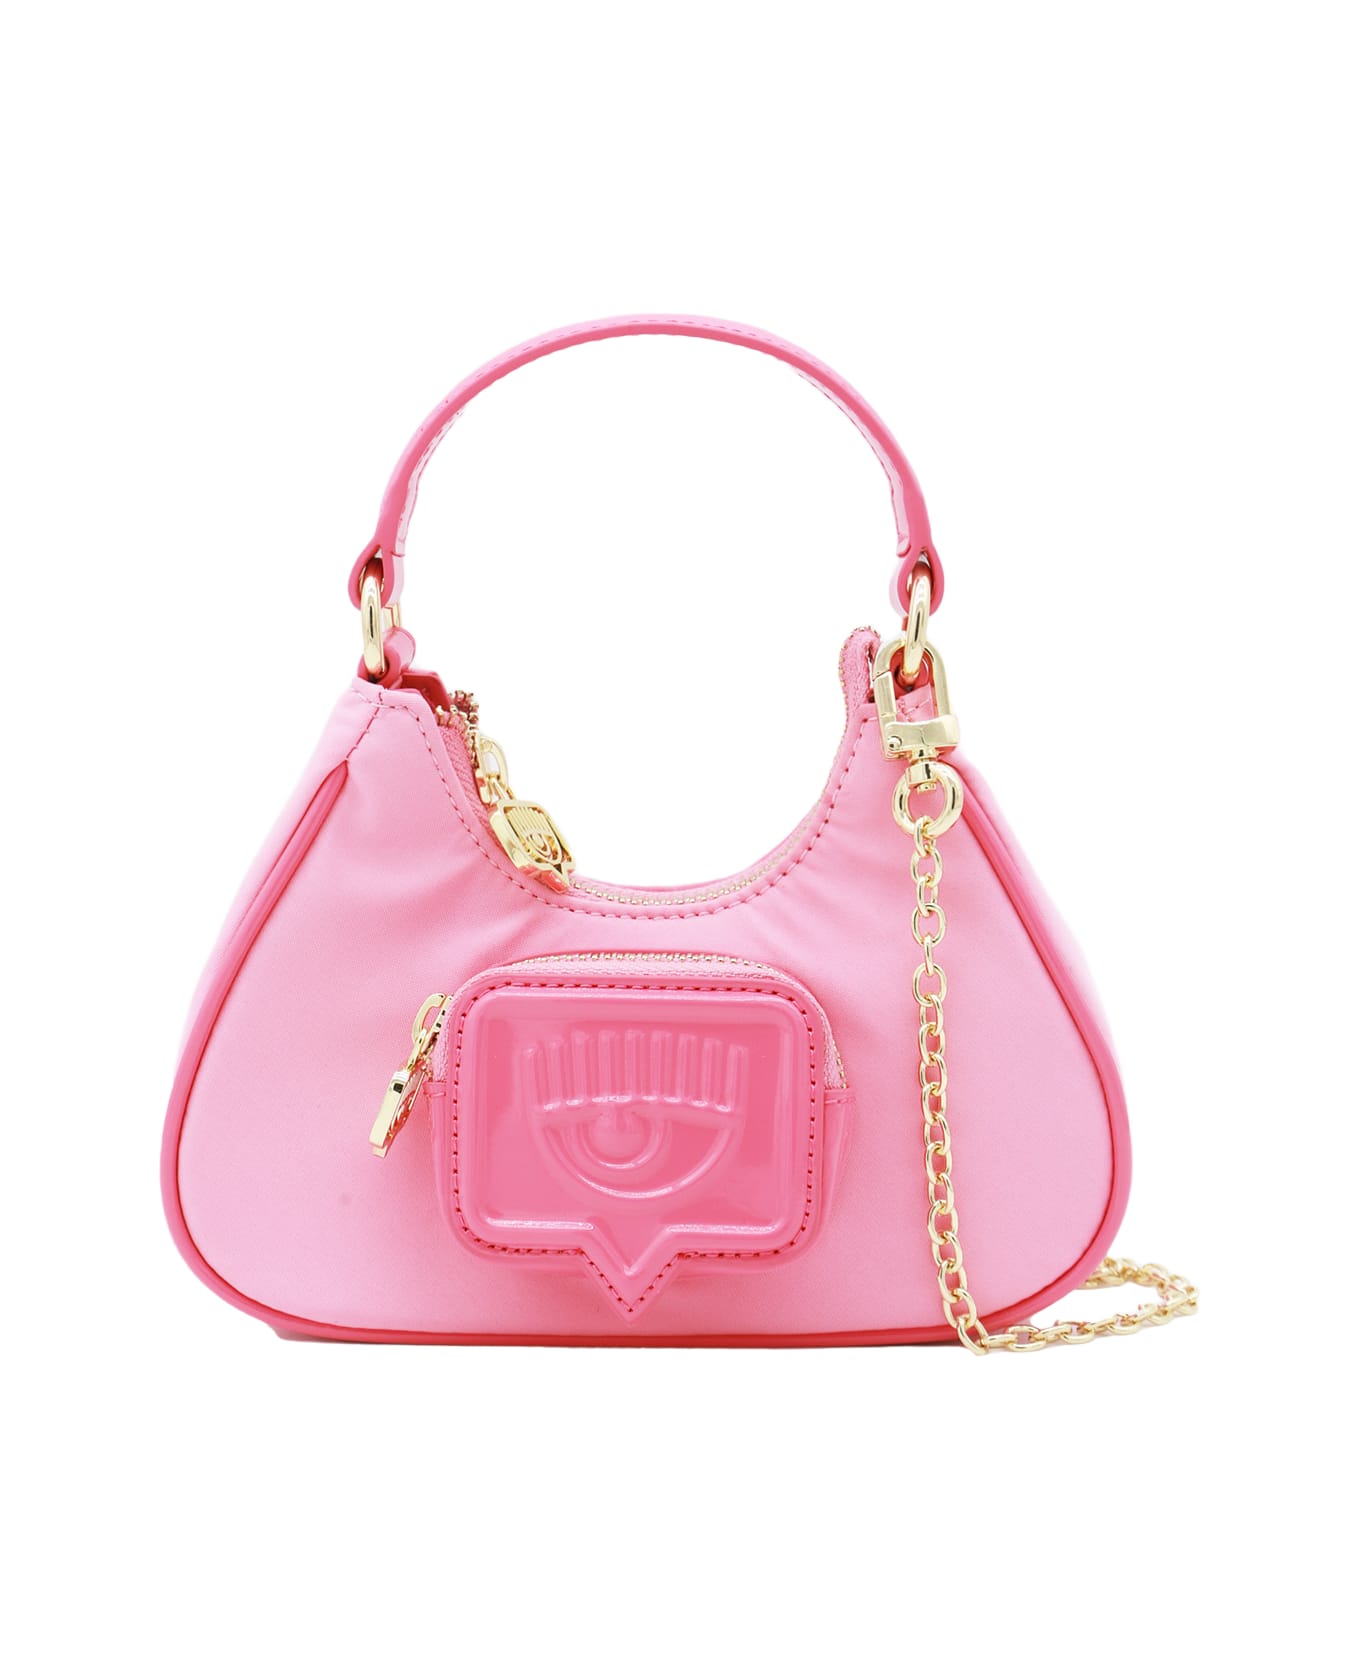 Chiara Ferragni Pink Top Handle Bag - Pink